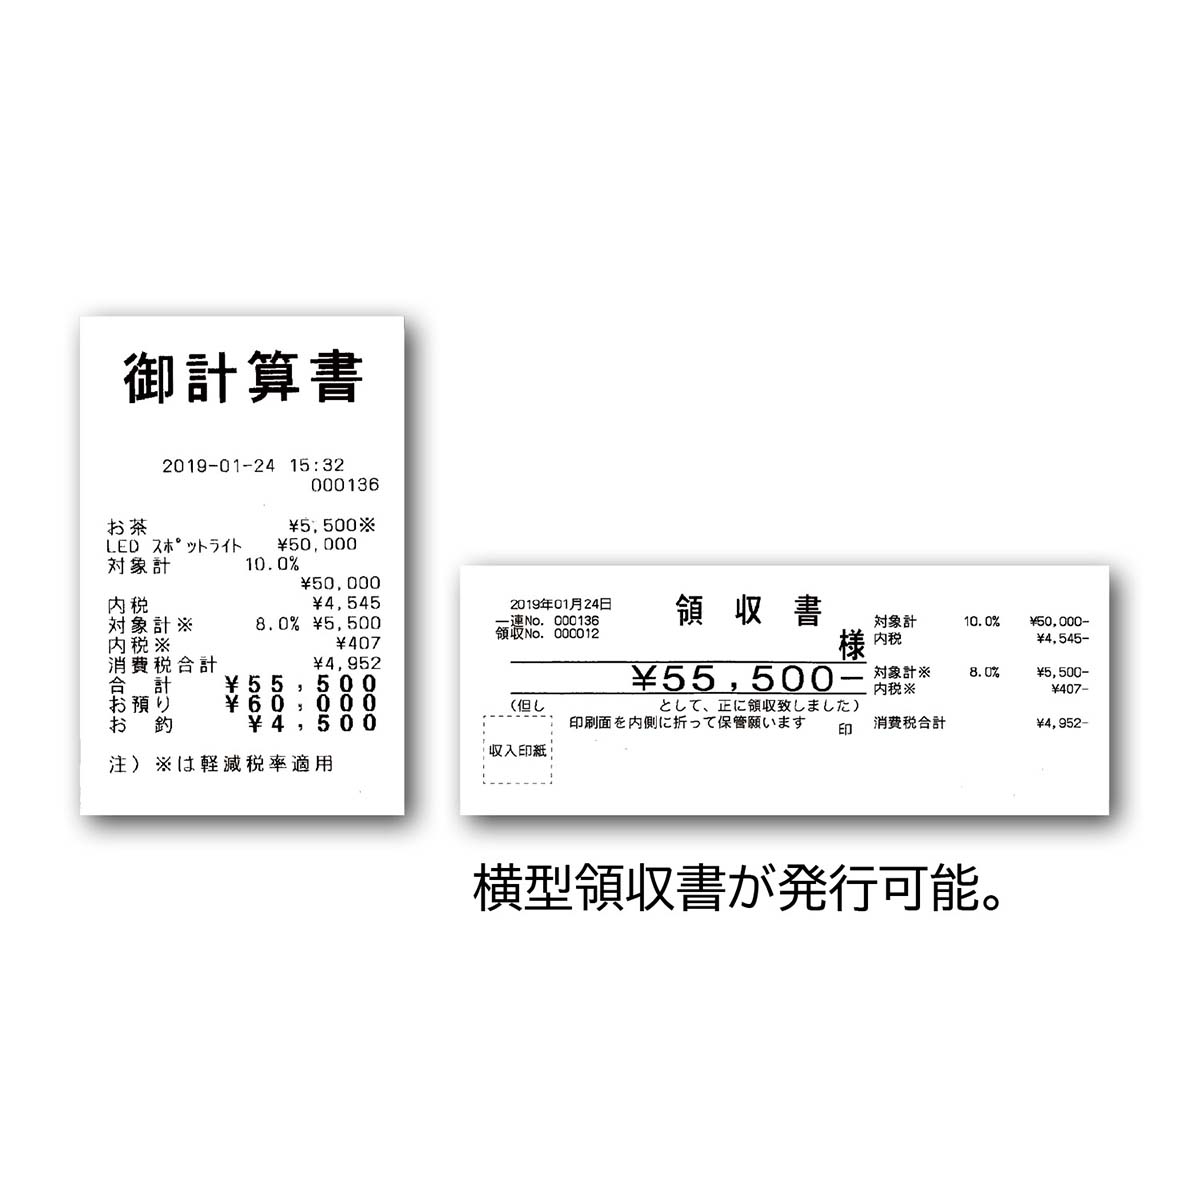 東芝テック レジスター MA-700-10 10部門タイプ ホワイト ロール紙10巻付き - 3